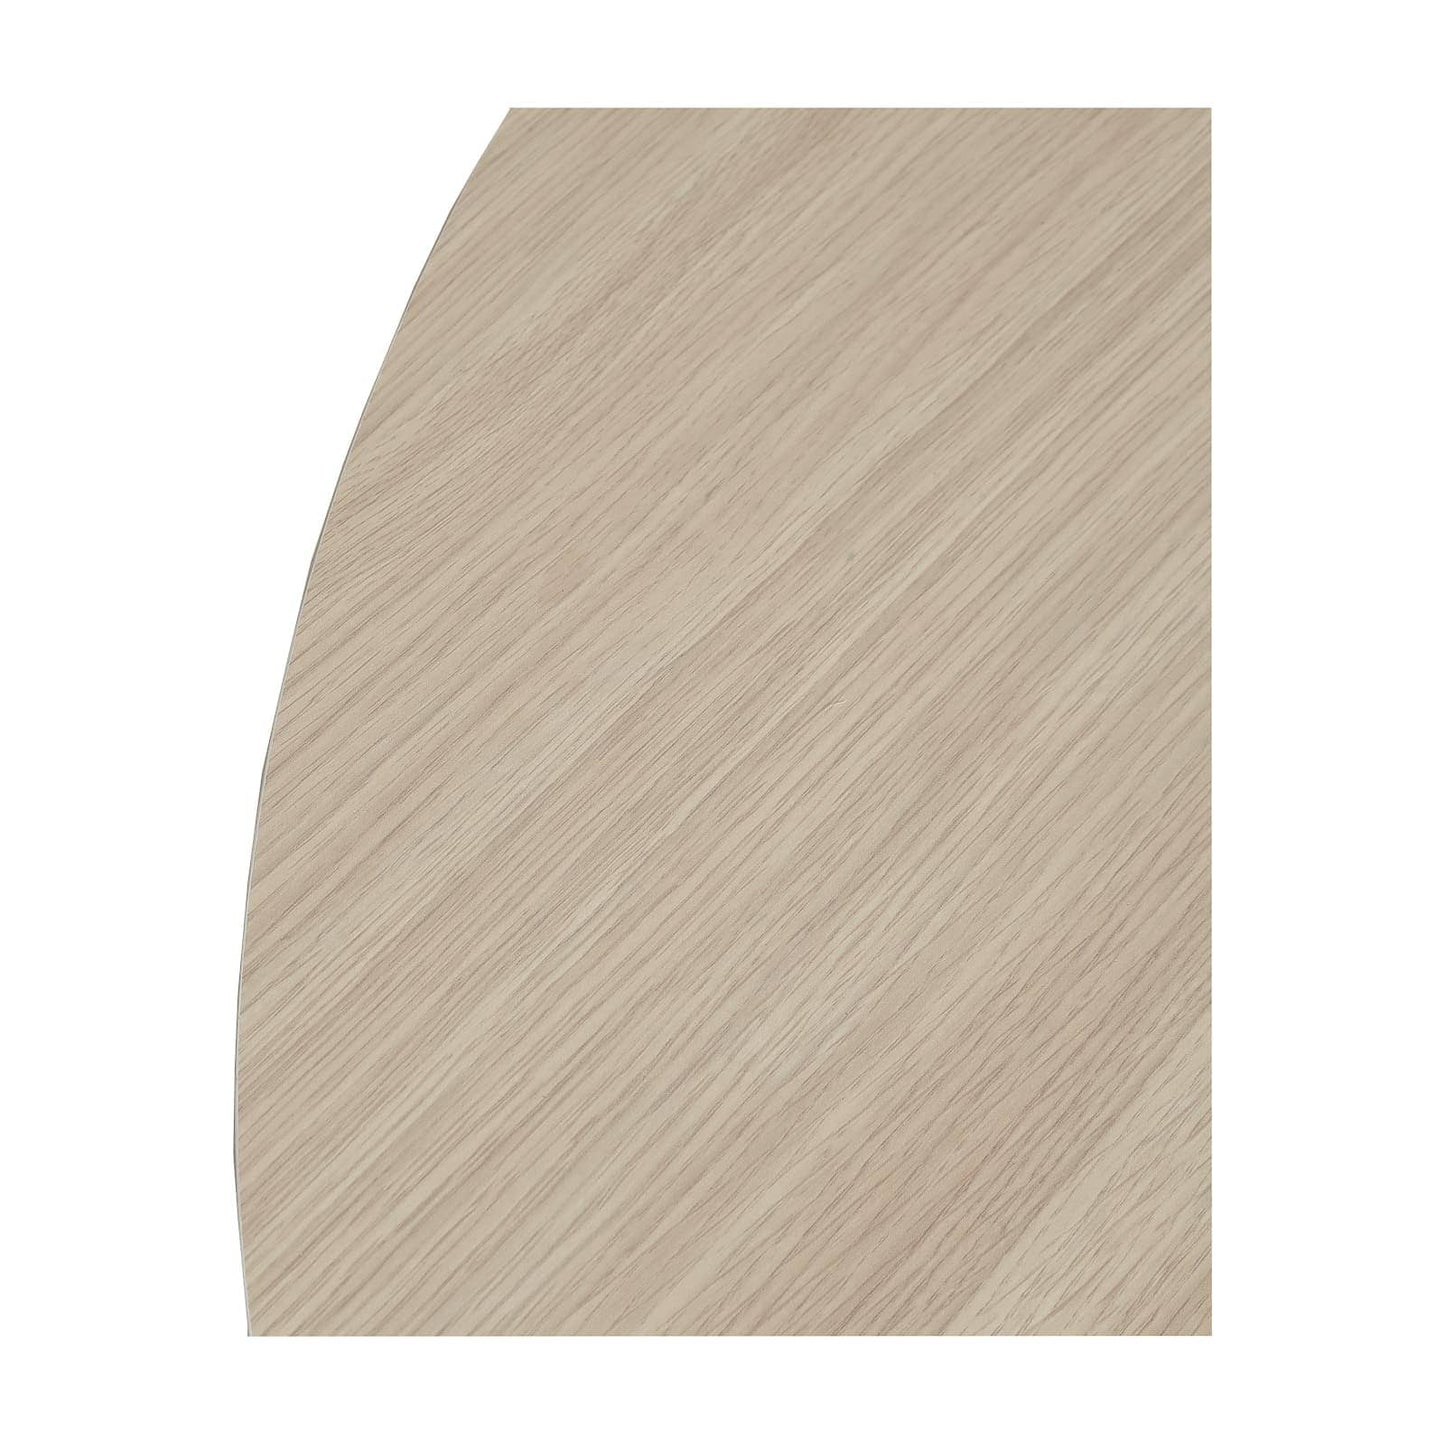 Bureau d'angle avec meuble de rangement occasion-Bois clair & blanc-180x100x75cm-Bluedigo